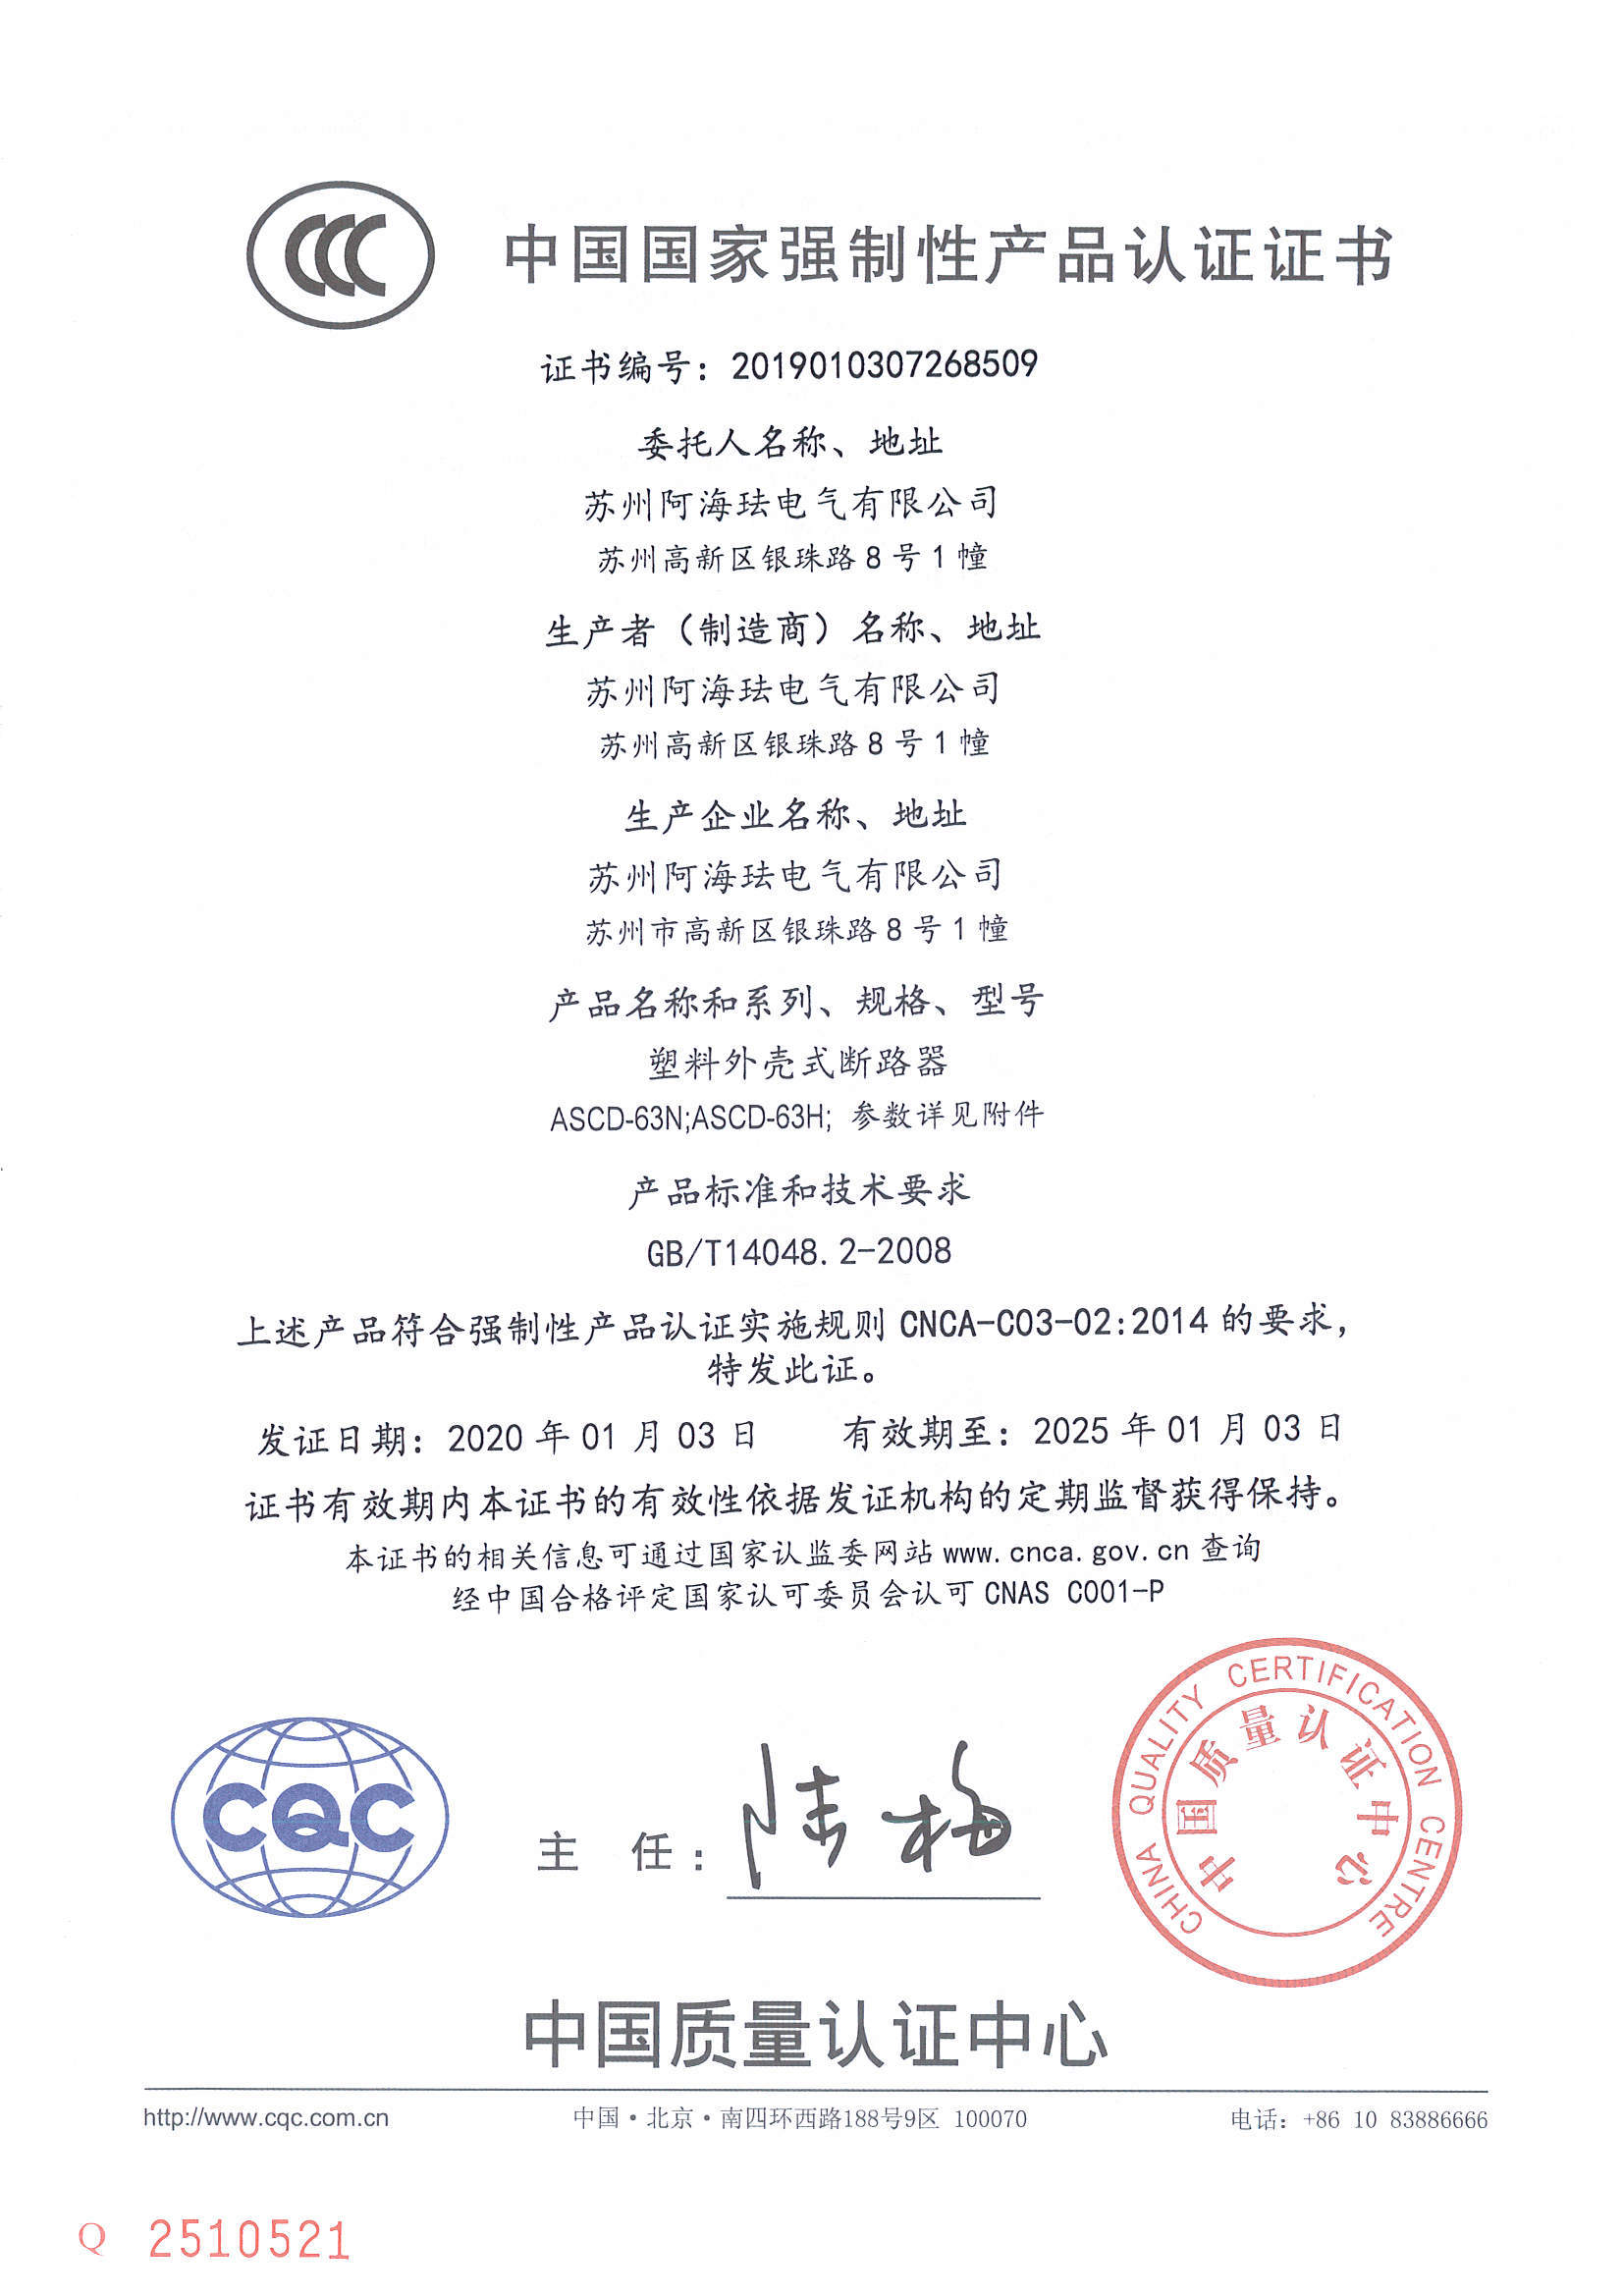 ASCD-63 CCC Certificate